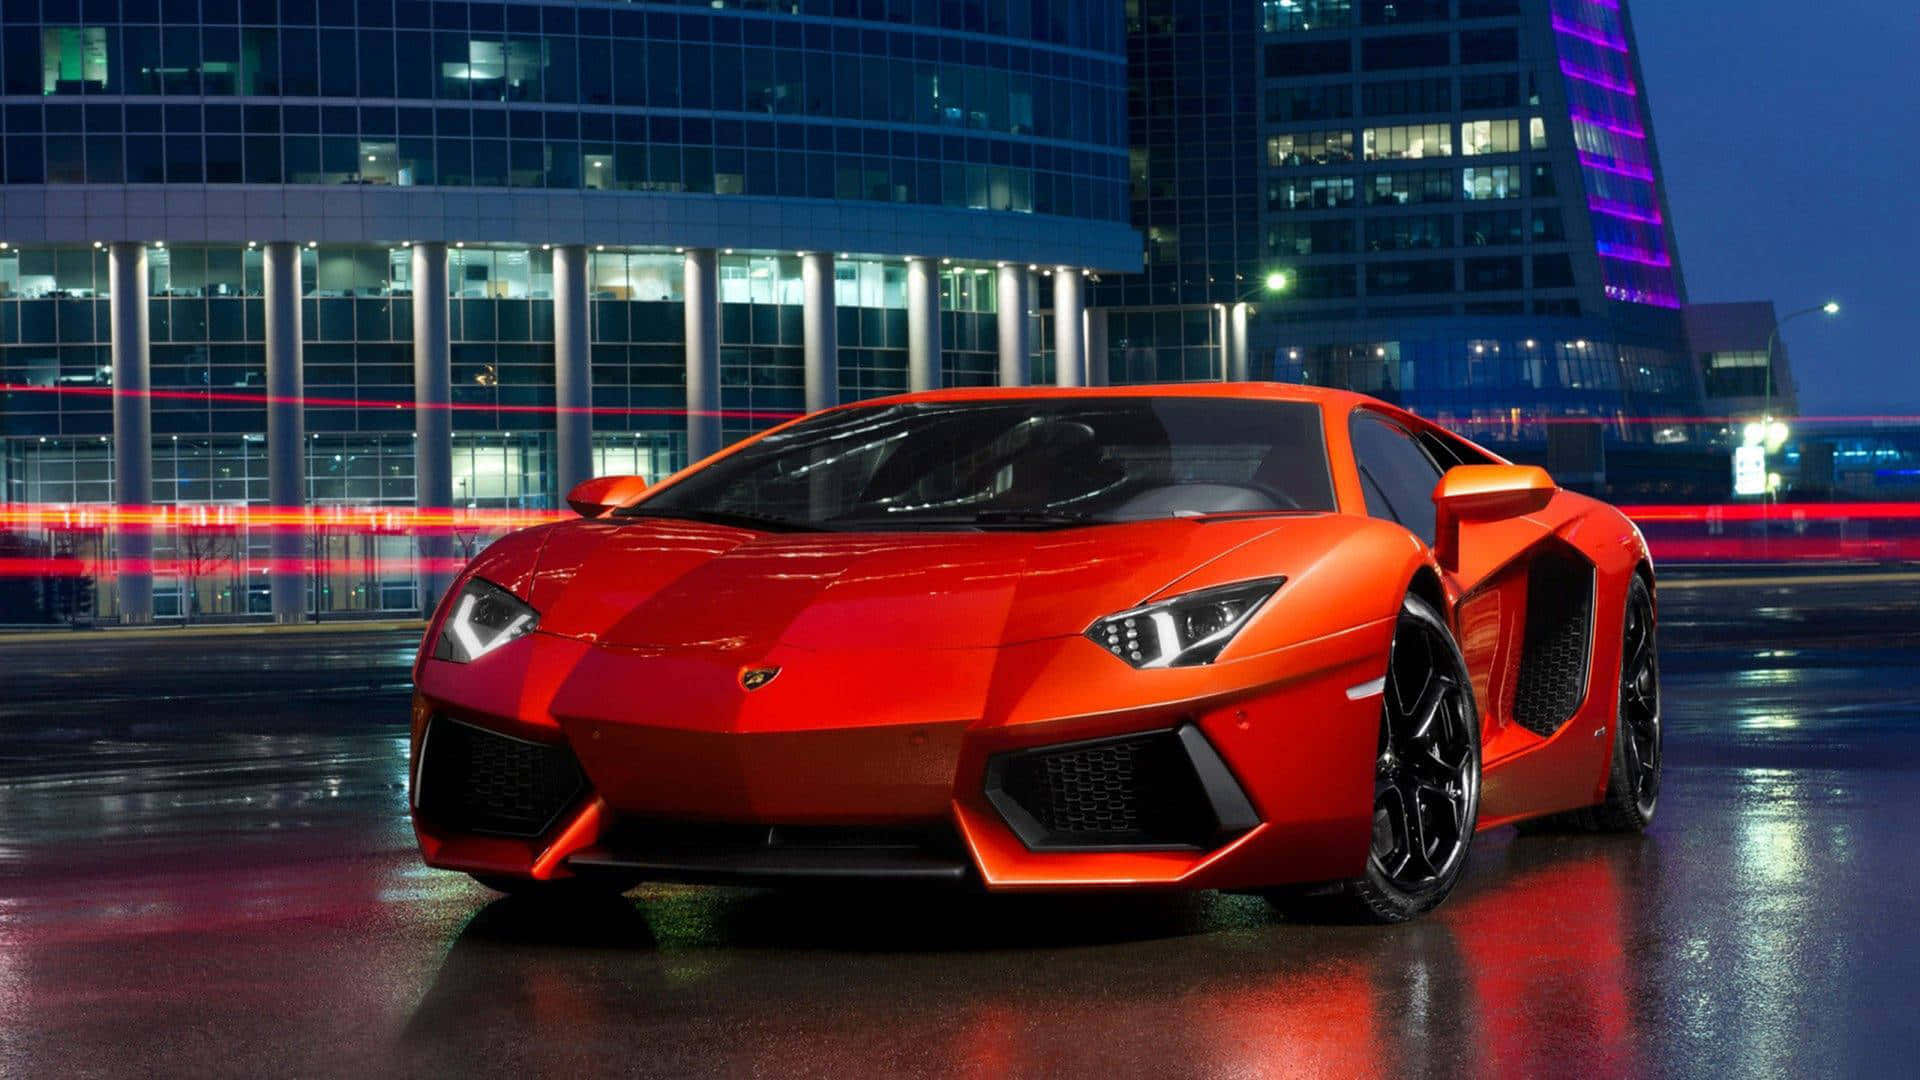 Red Lamborghini Aventador Night Cityscape Wallpaper